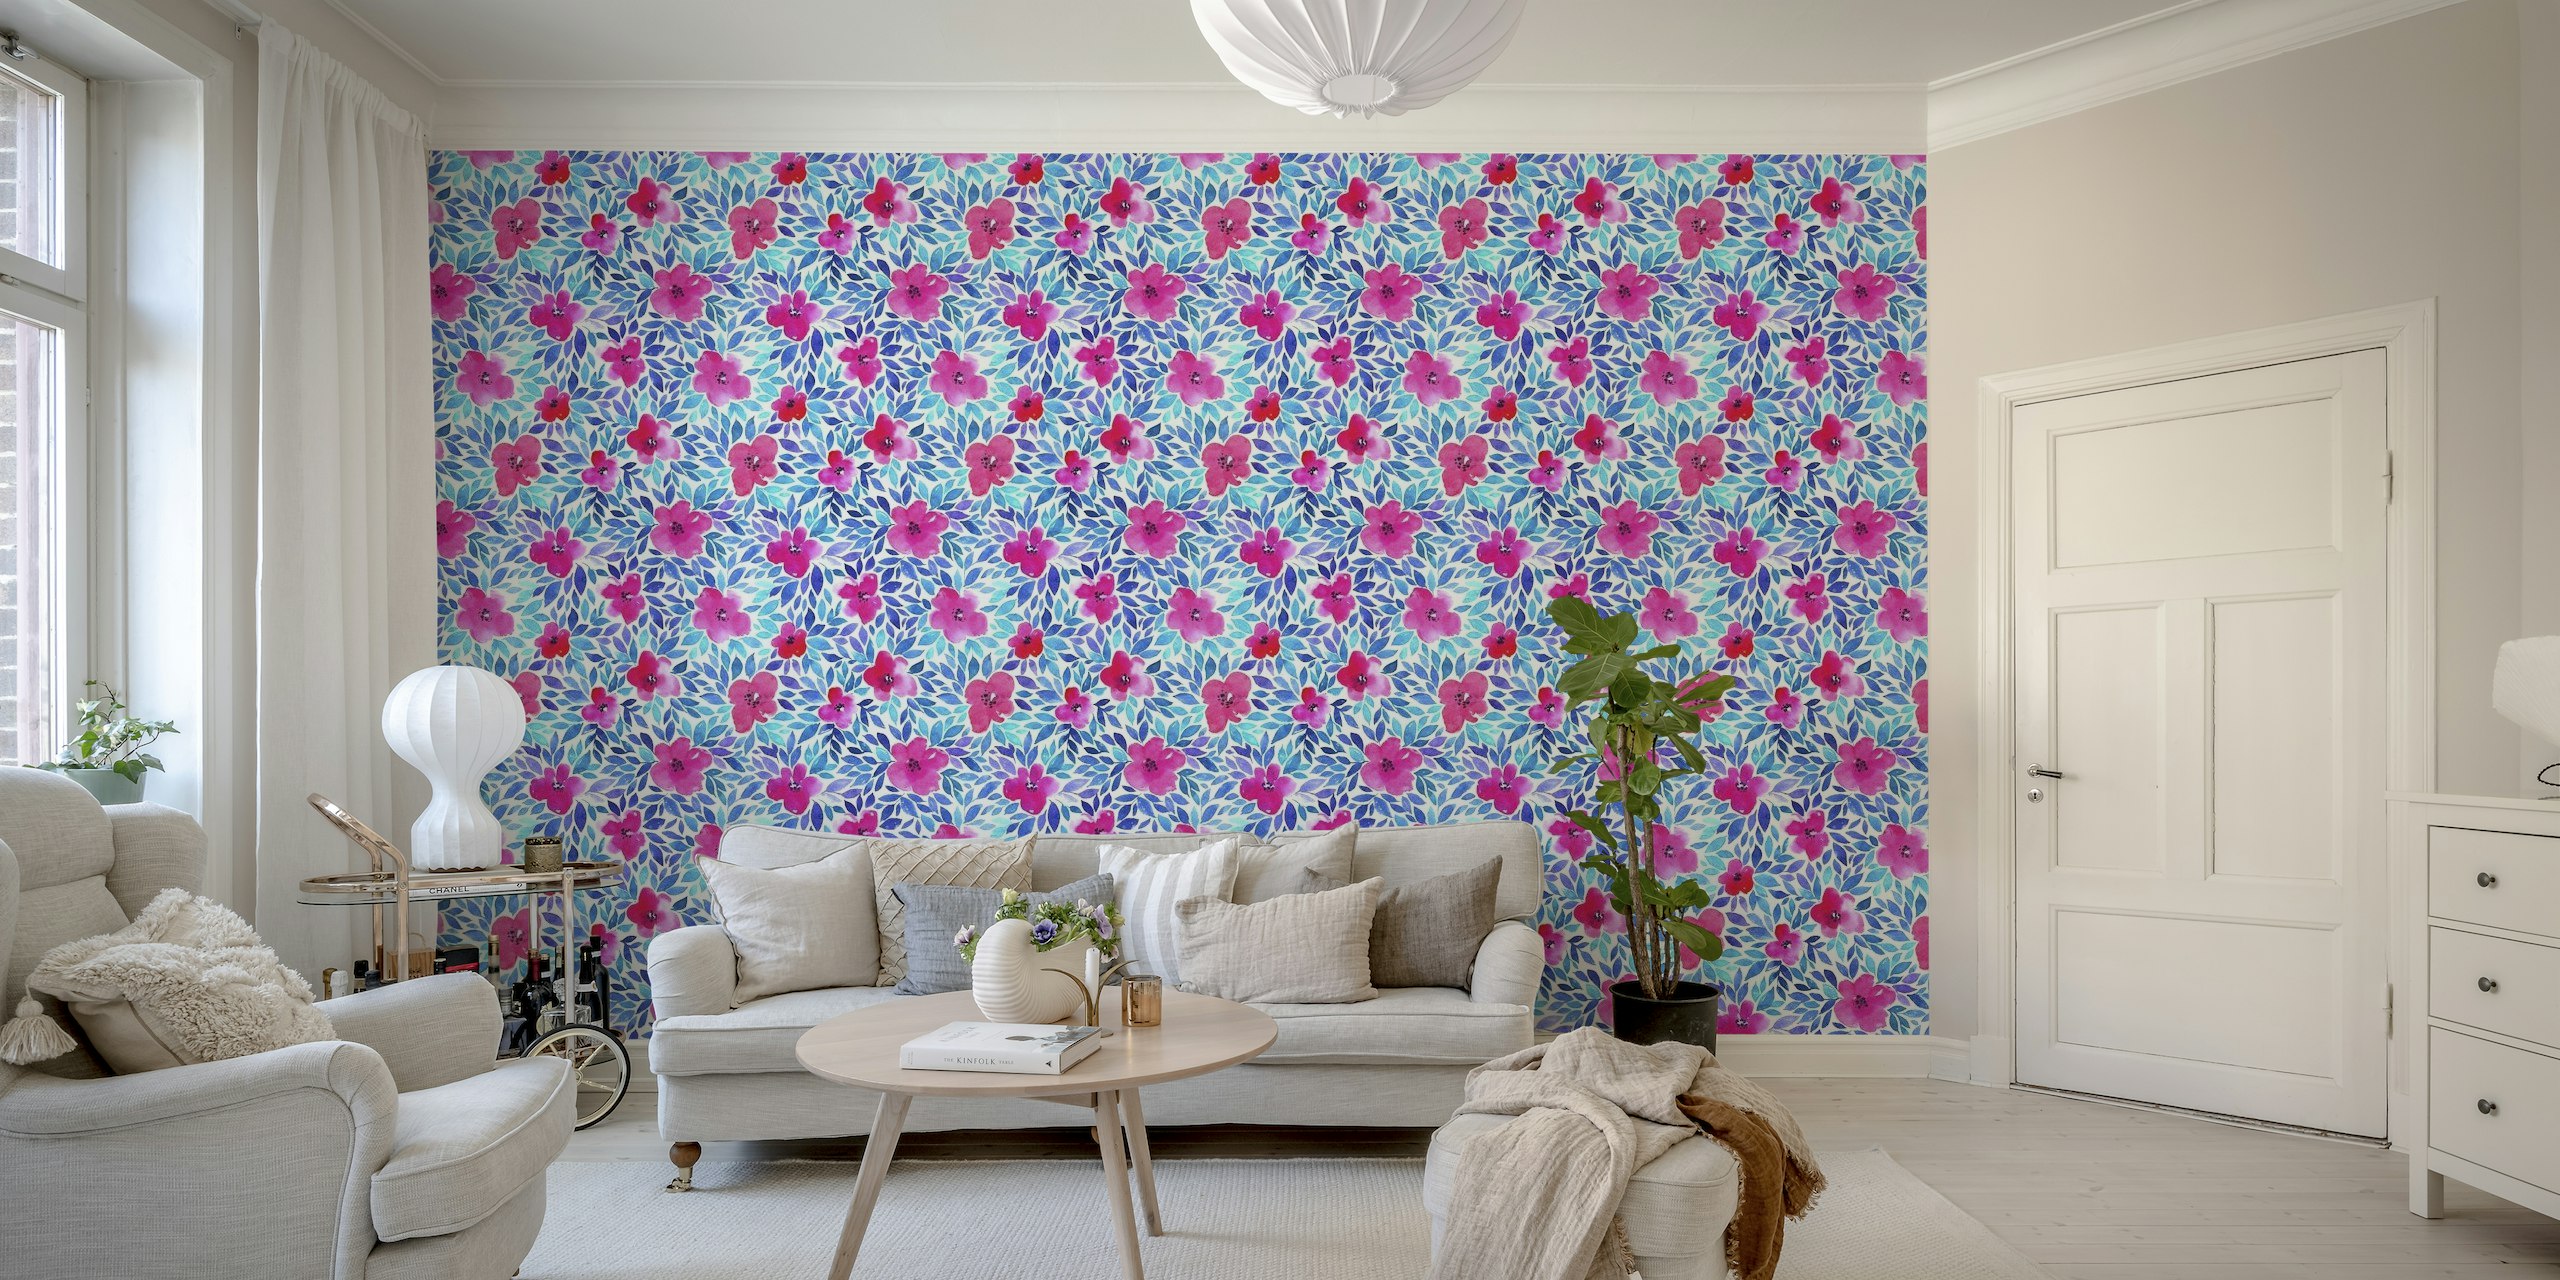 In bloom wallpaper